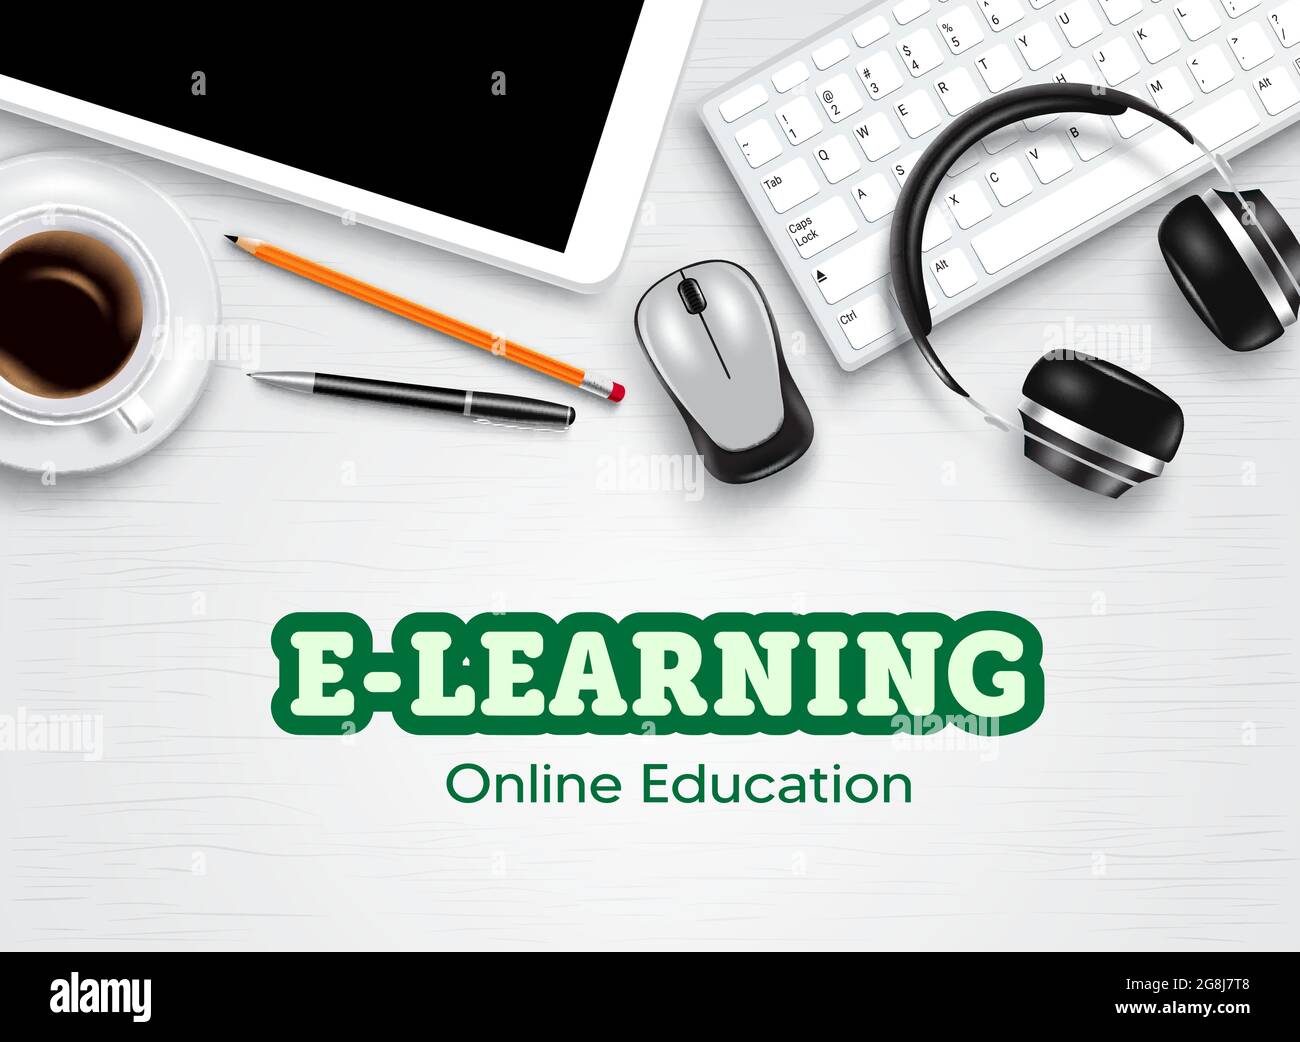 Học trực tuyến (E-learning): Hãy khám phá thế giới học tập mới với hình thức học trực tuyến đầy tiện lợi và hiệu quả. Bạn sẽ có cơ hội tiếp cận các tài liệu, lớp học và giáo viên chất lượng từ khắp nơi trên thế giới chỉ bằng một chiếc máy tính có kết nối wifi.